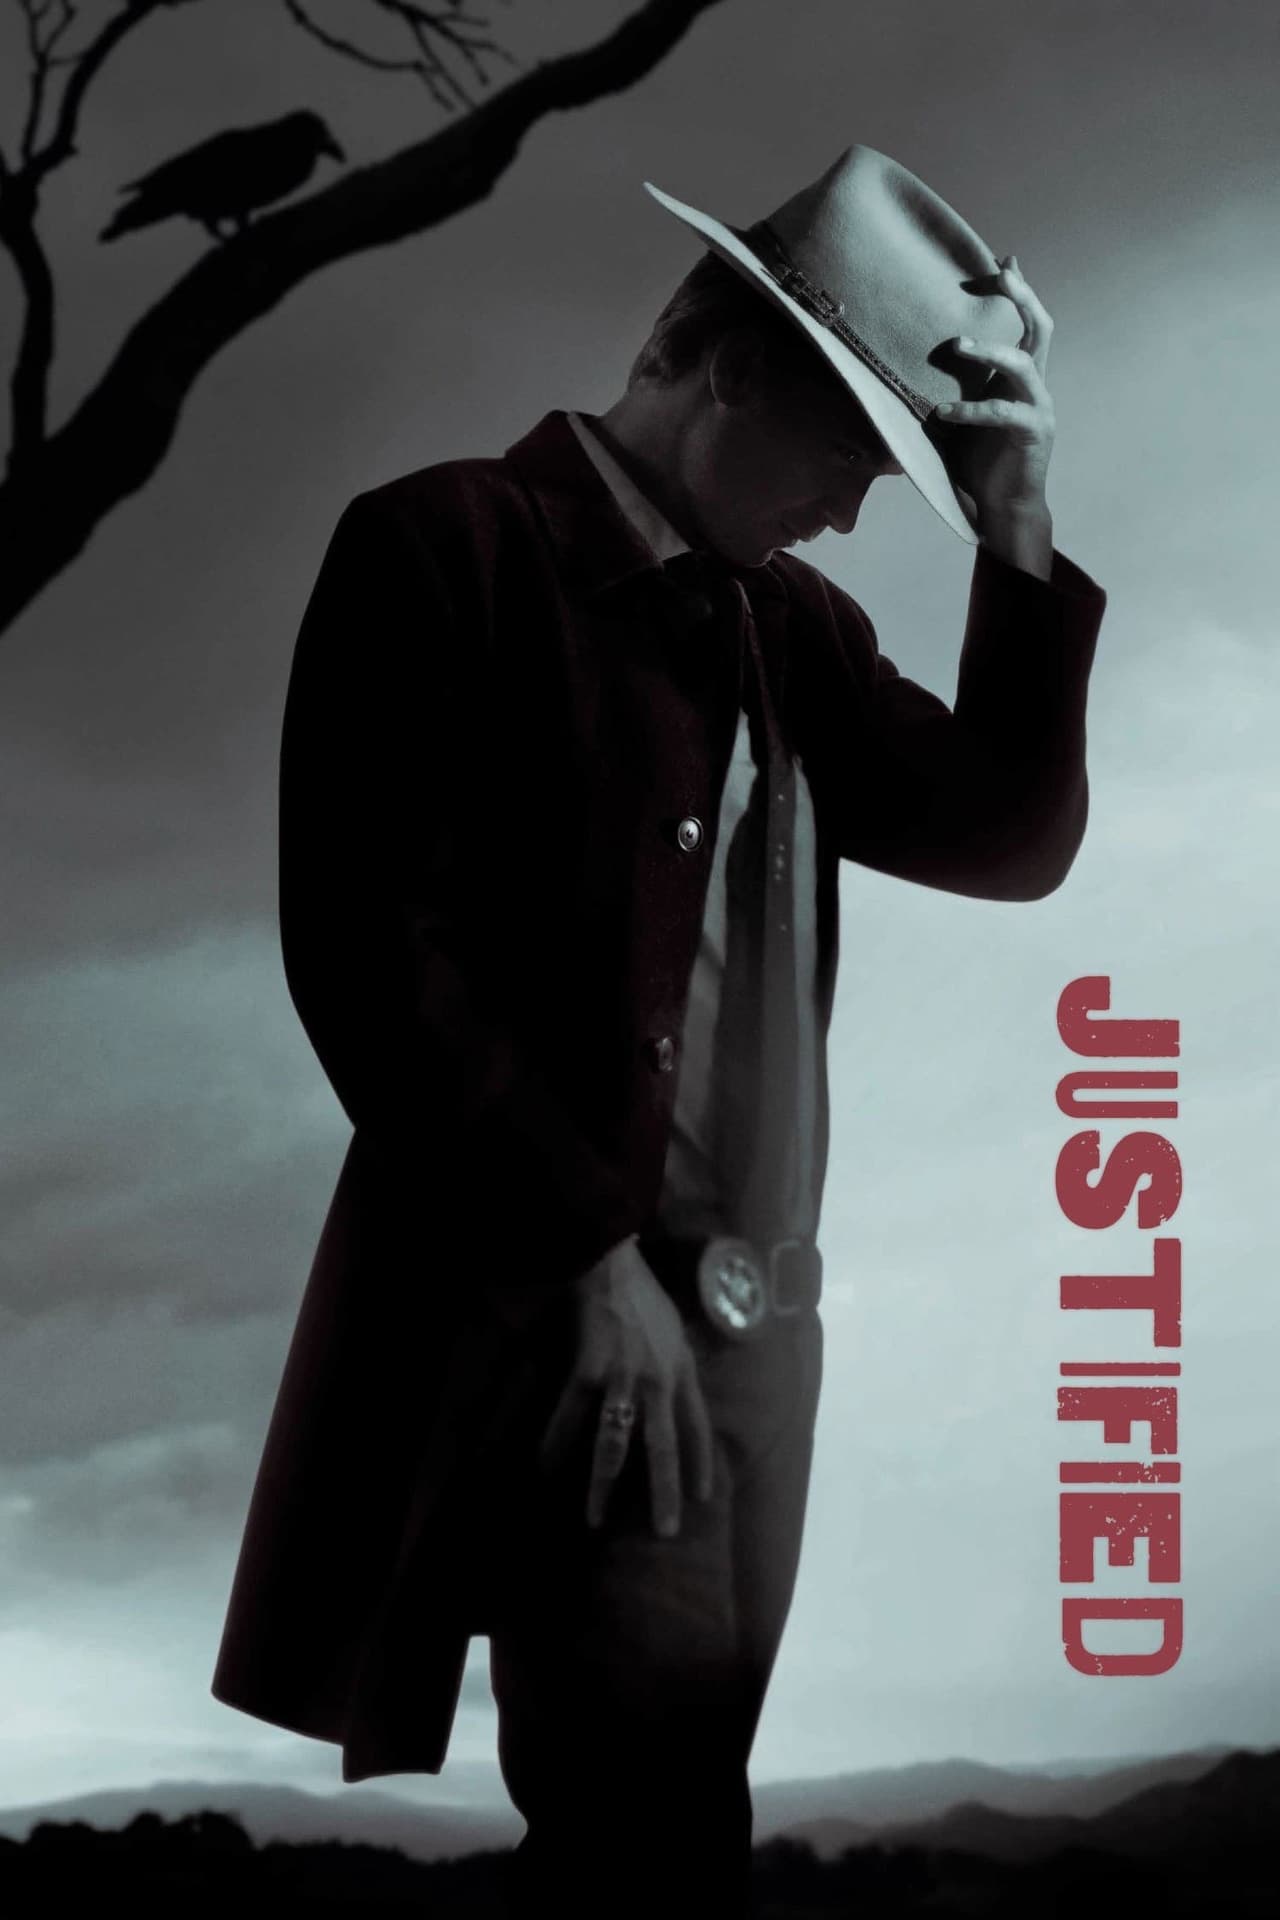 Justified (season 1)